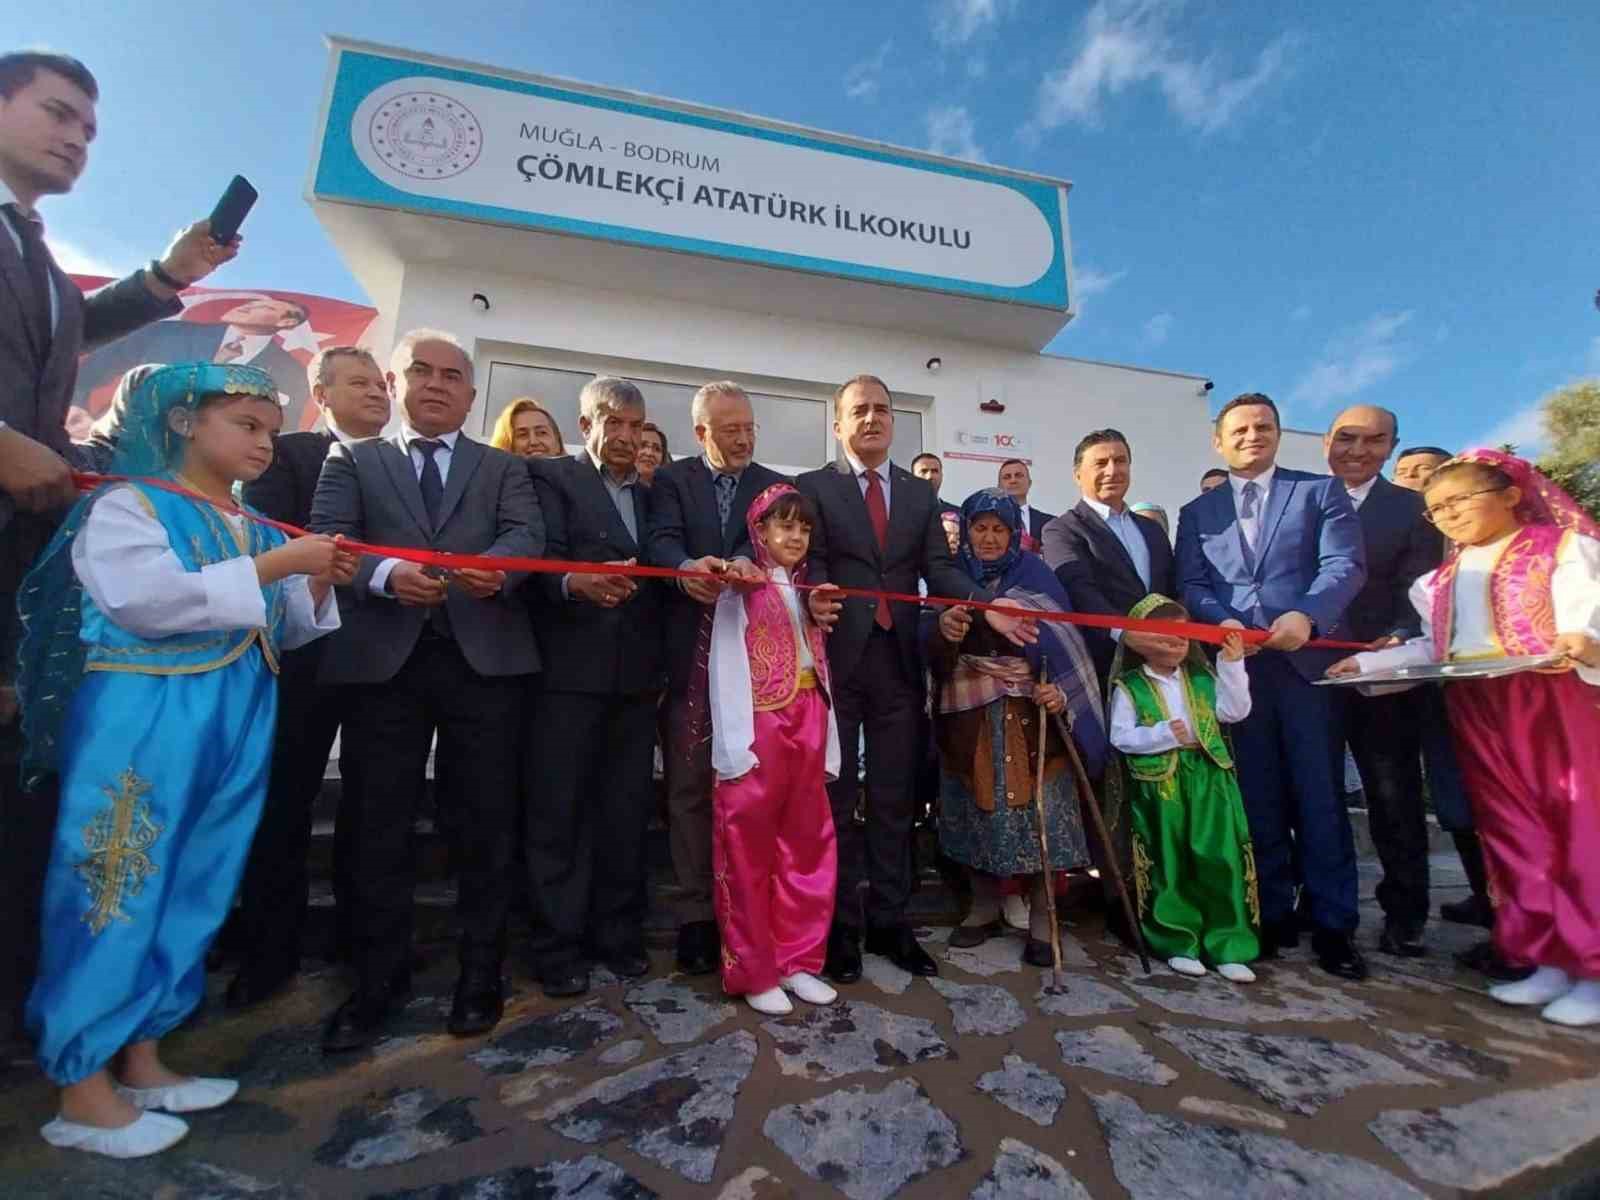 Bodrum’da Çömlekçi Atatürk İlkokulu açıldı